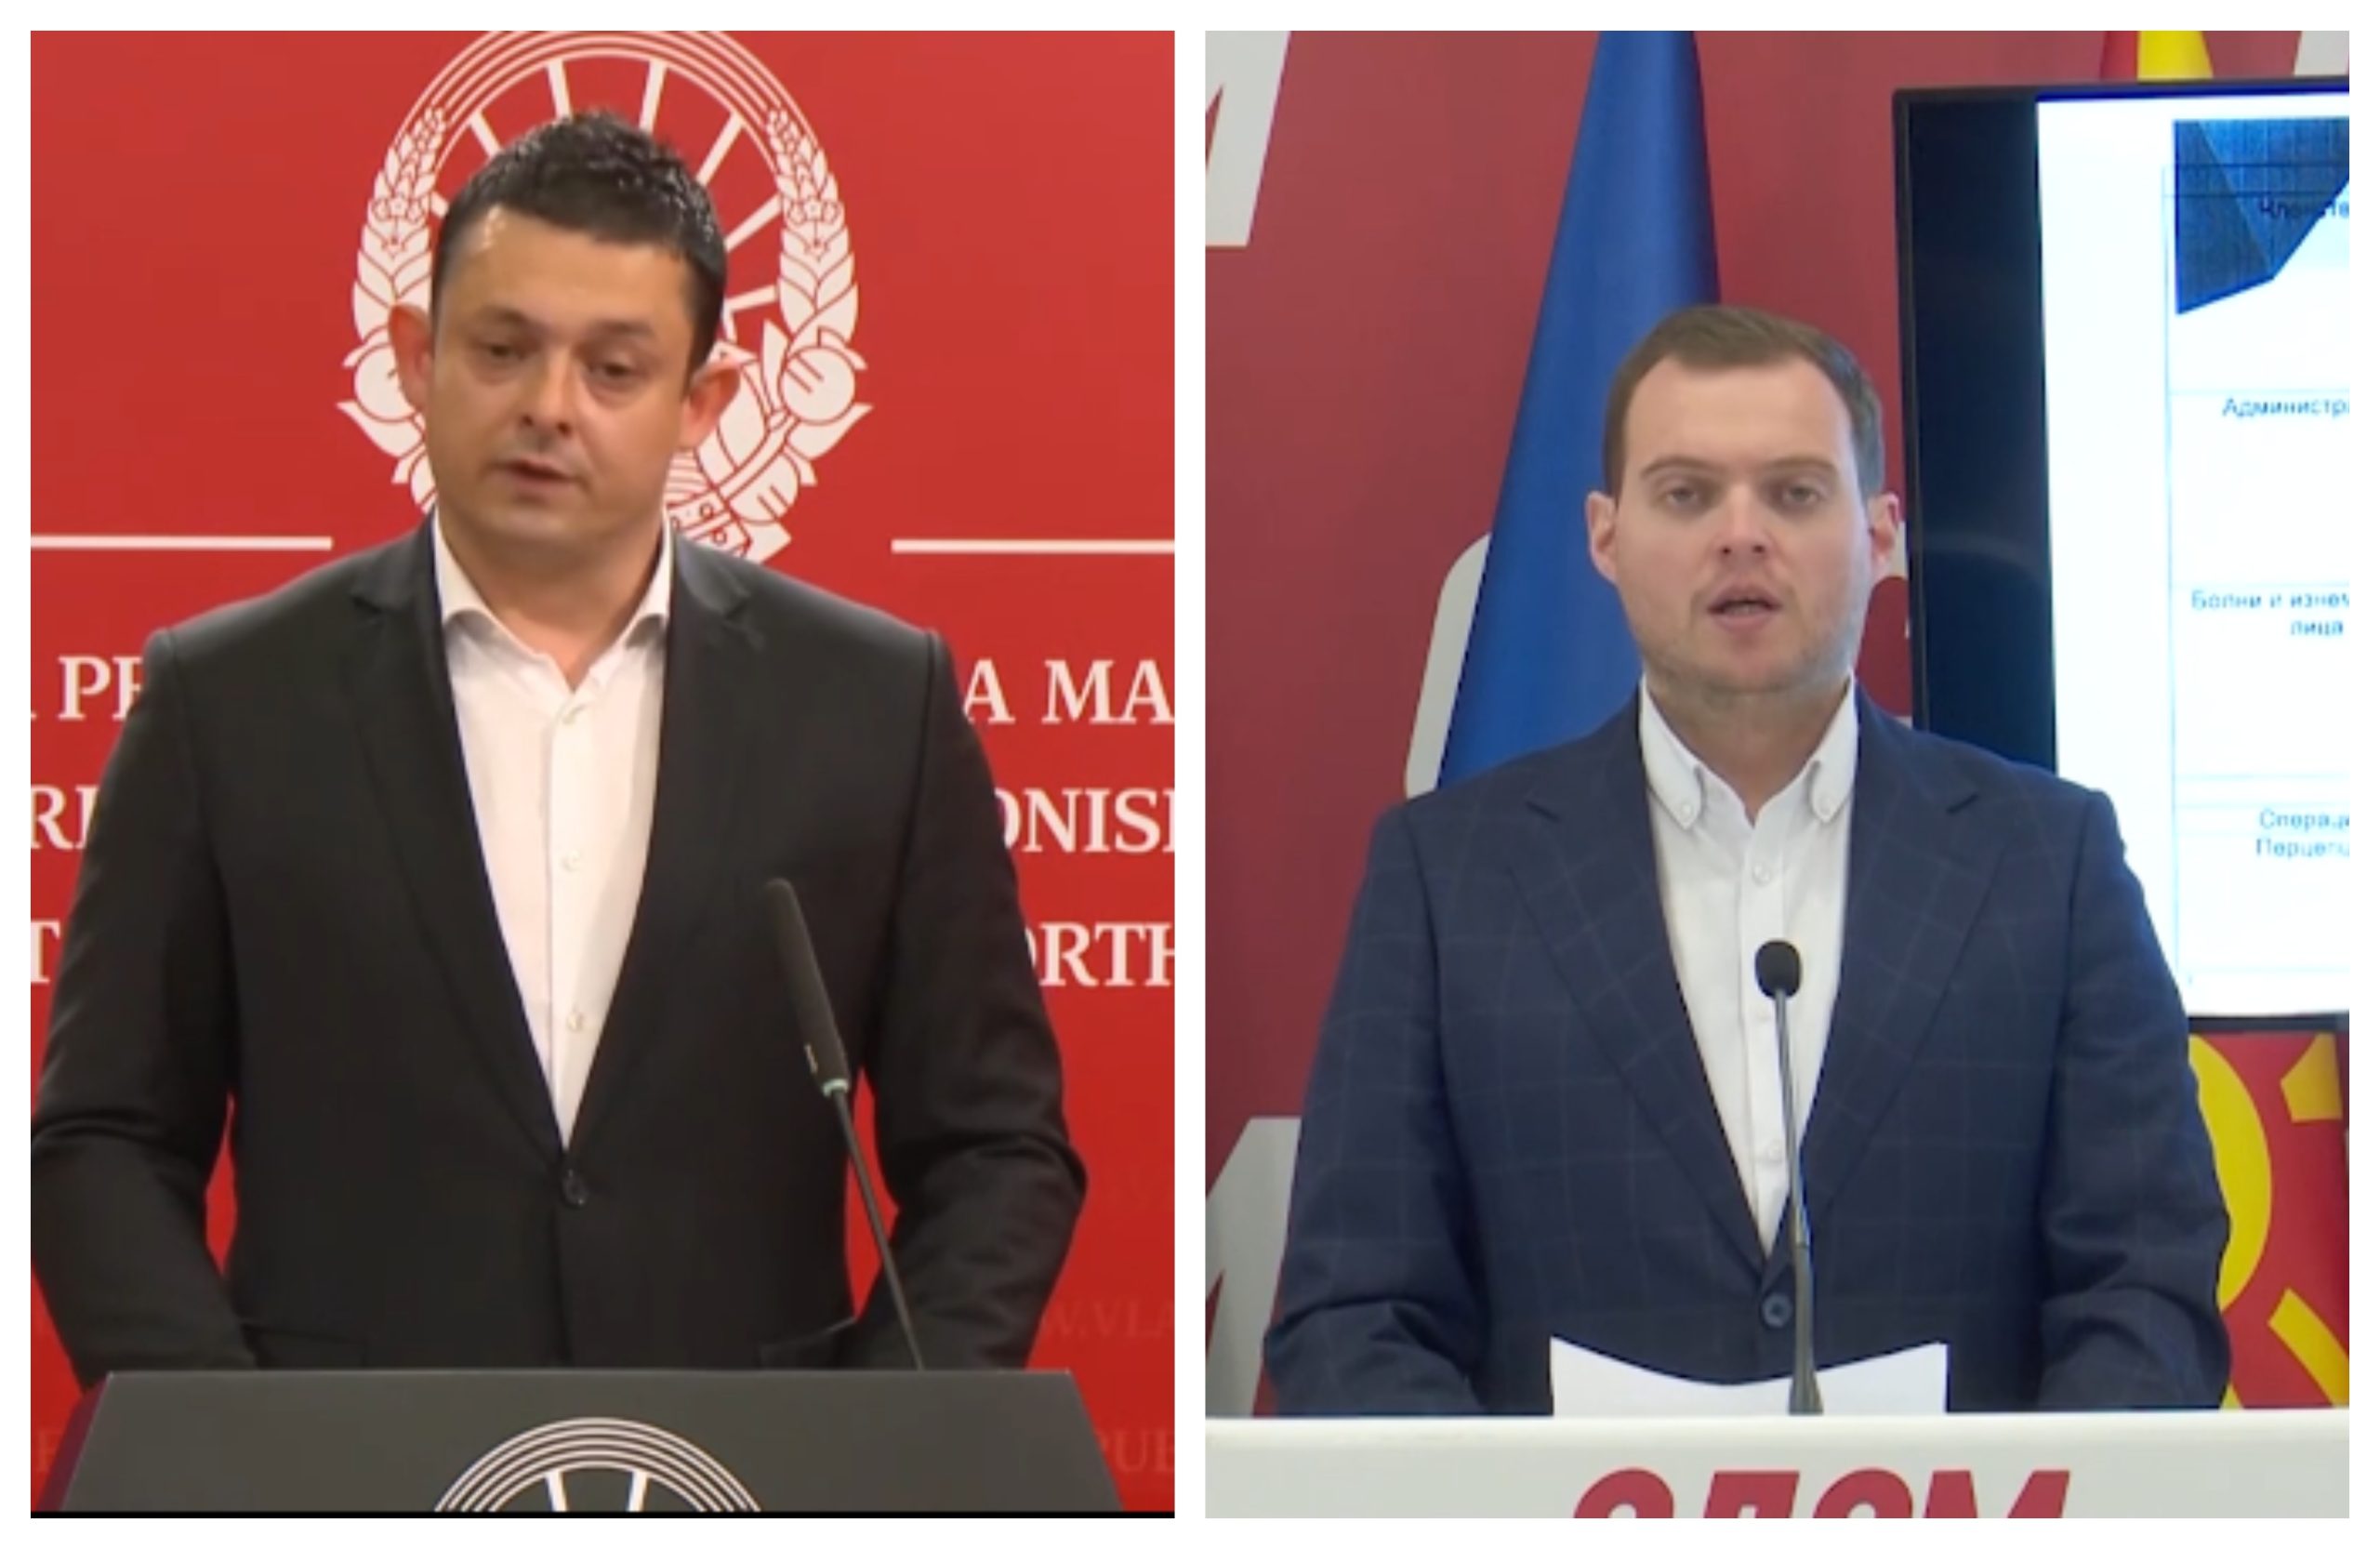 Каевски, Димевски и Мојсовски се гонат за поделба на ваучери од Агенцијата за млади и спорт вредни 5 милиони евра